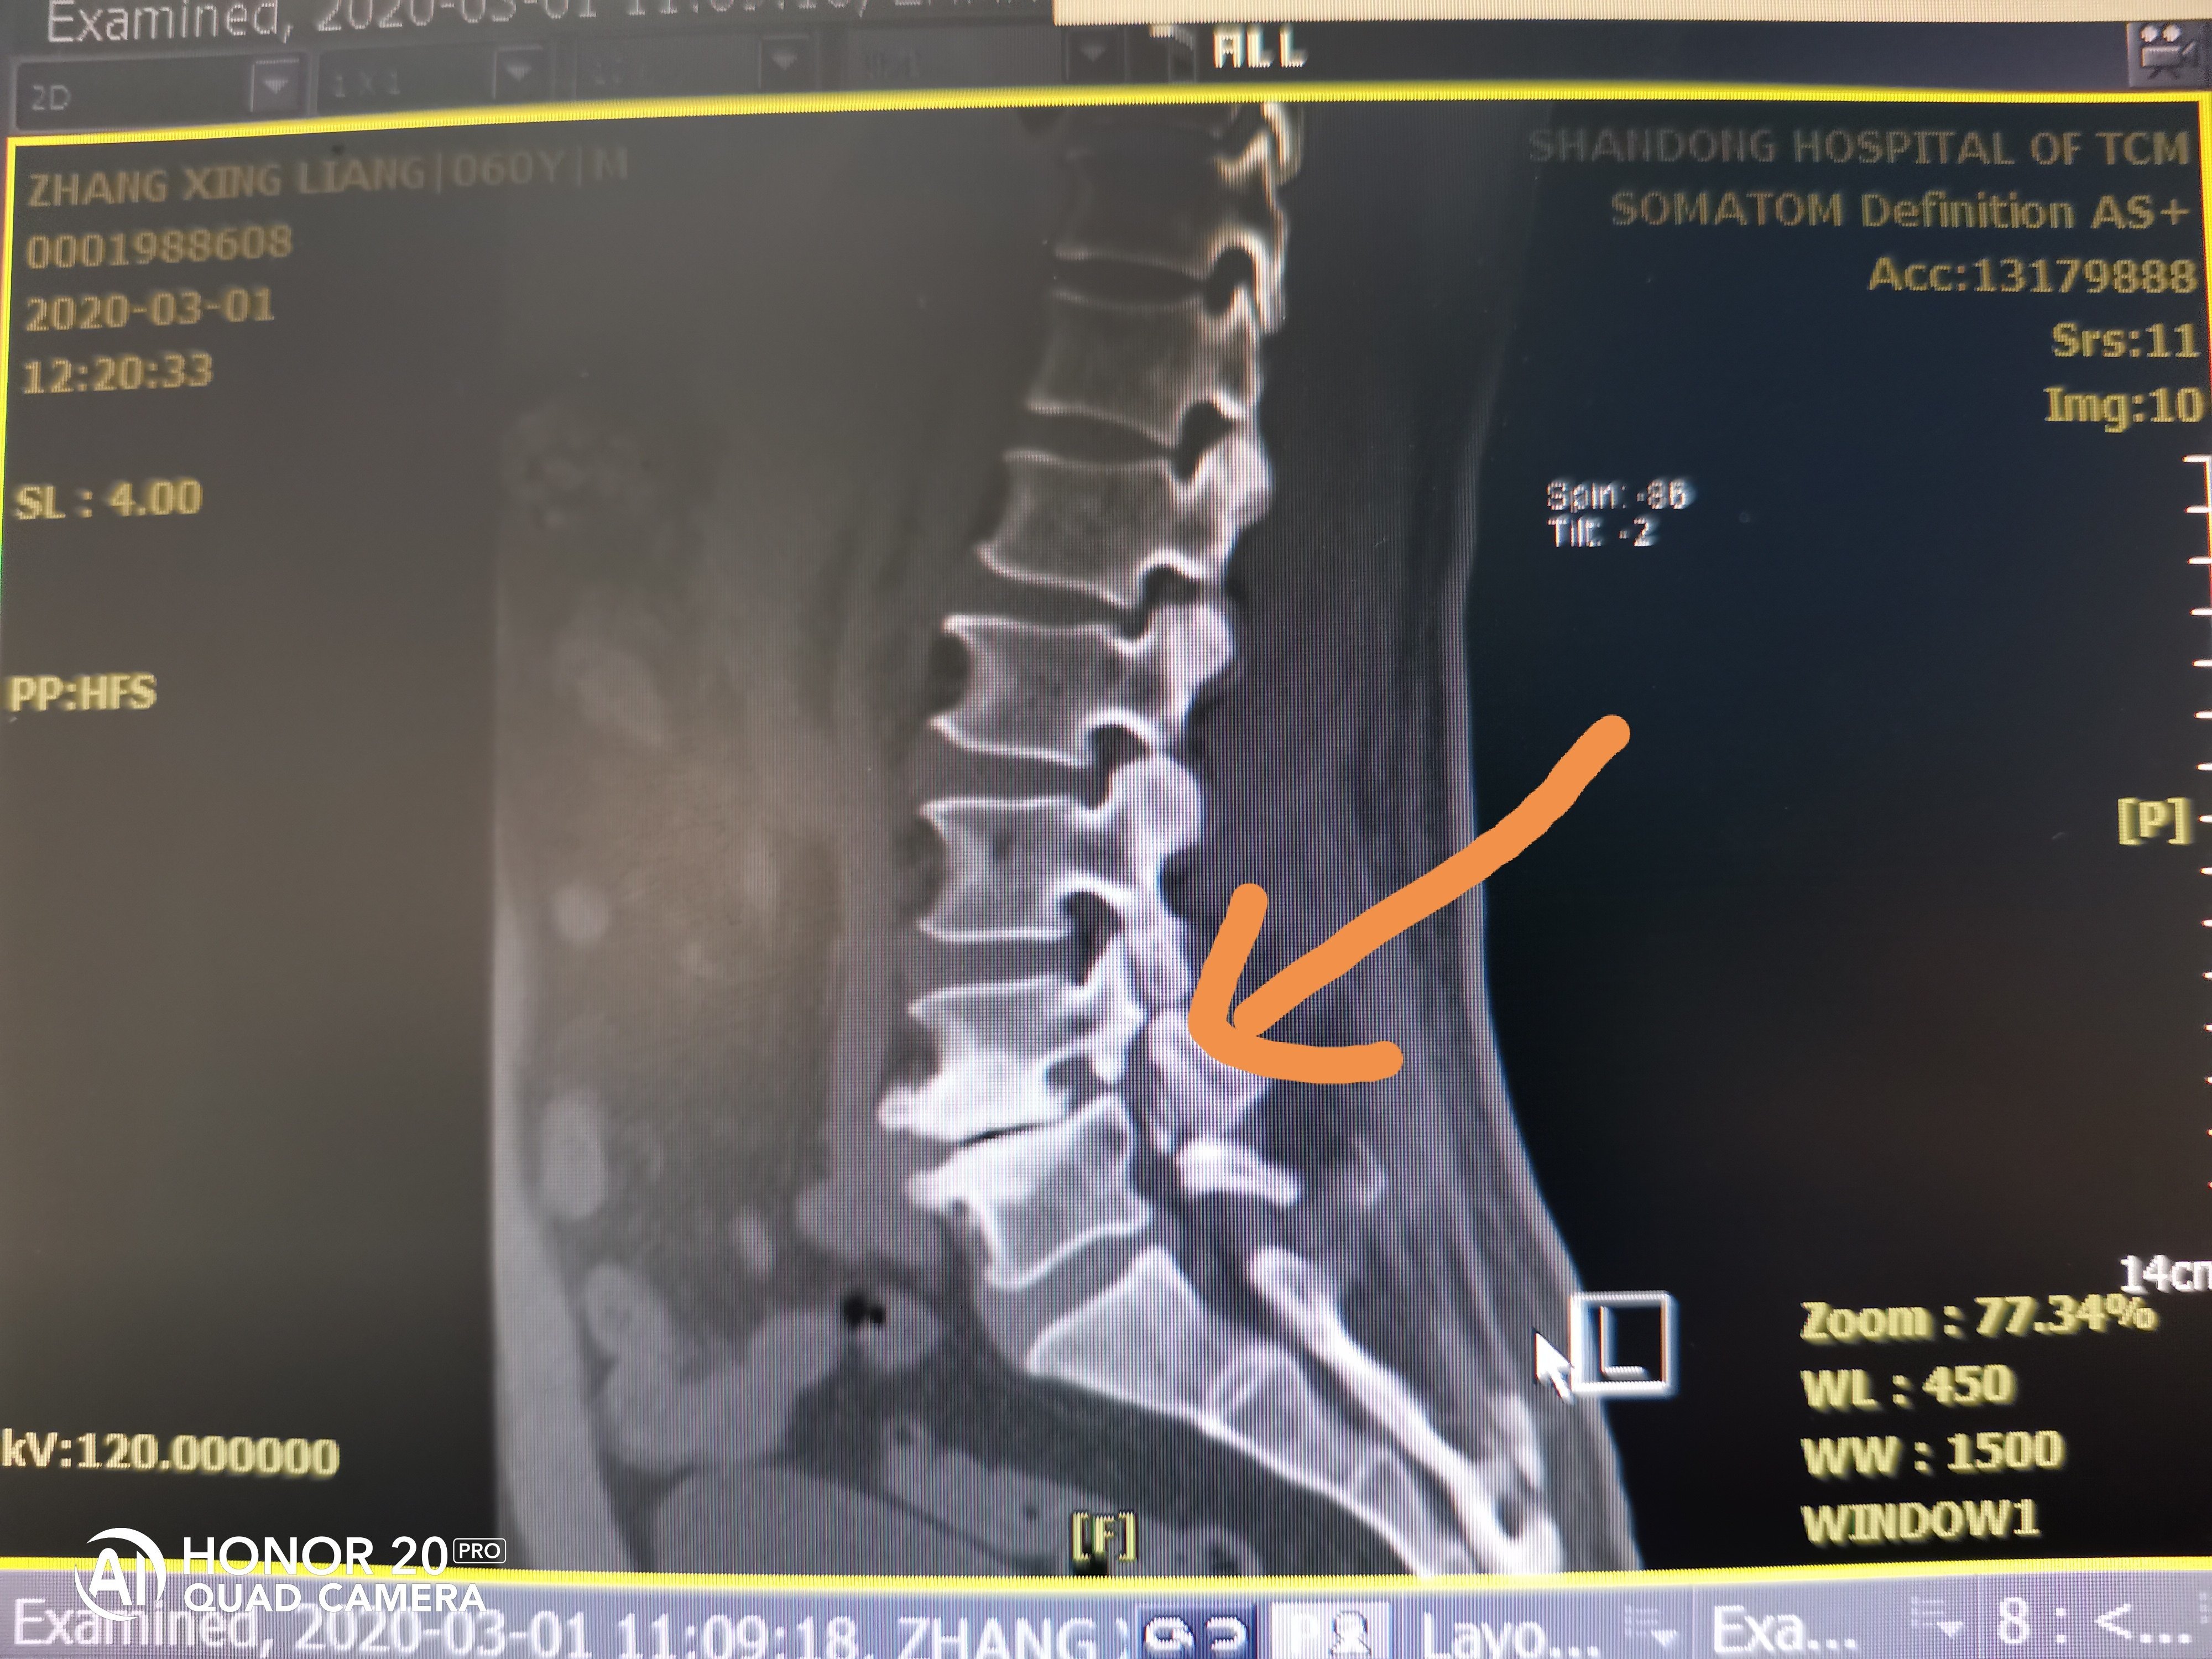 今日分享:一位患者,60岁,腰椎滑脱1度,l4,l5椎体双侧椎弓根崩裂